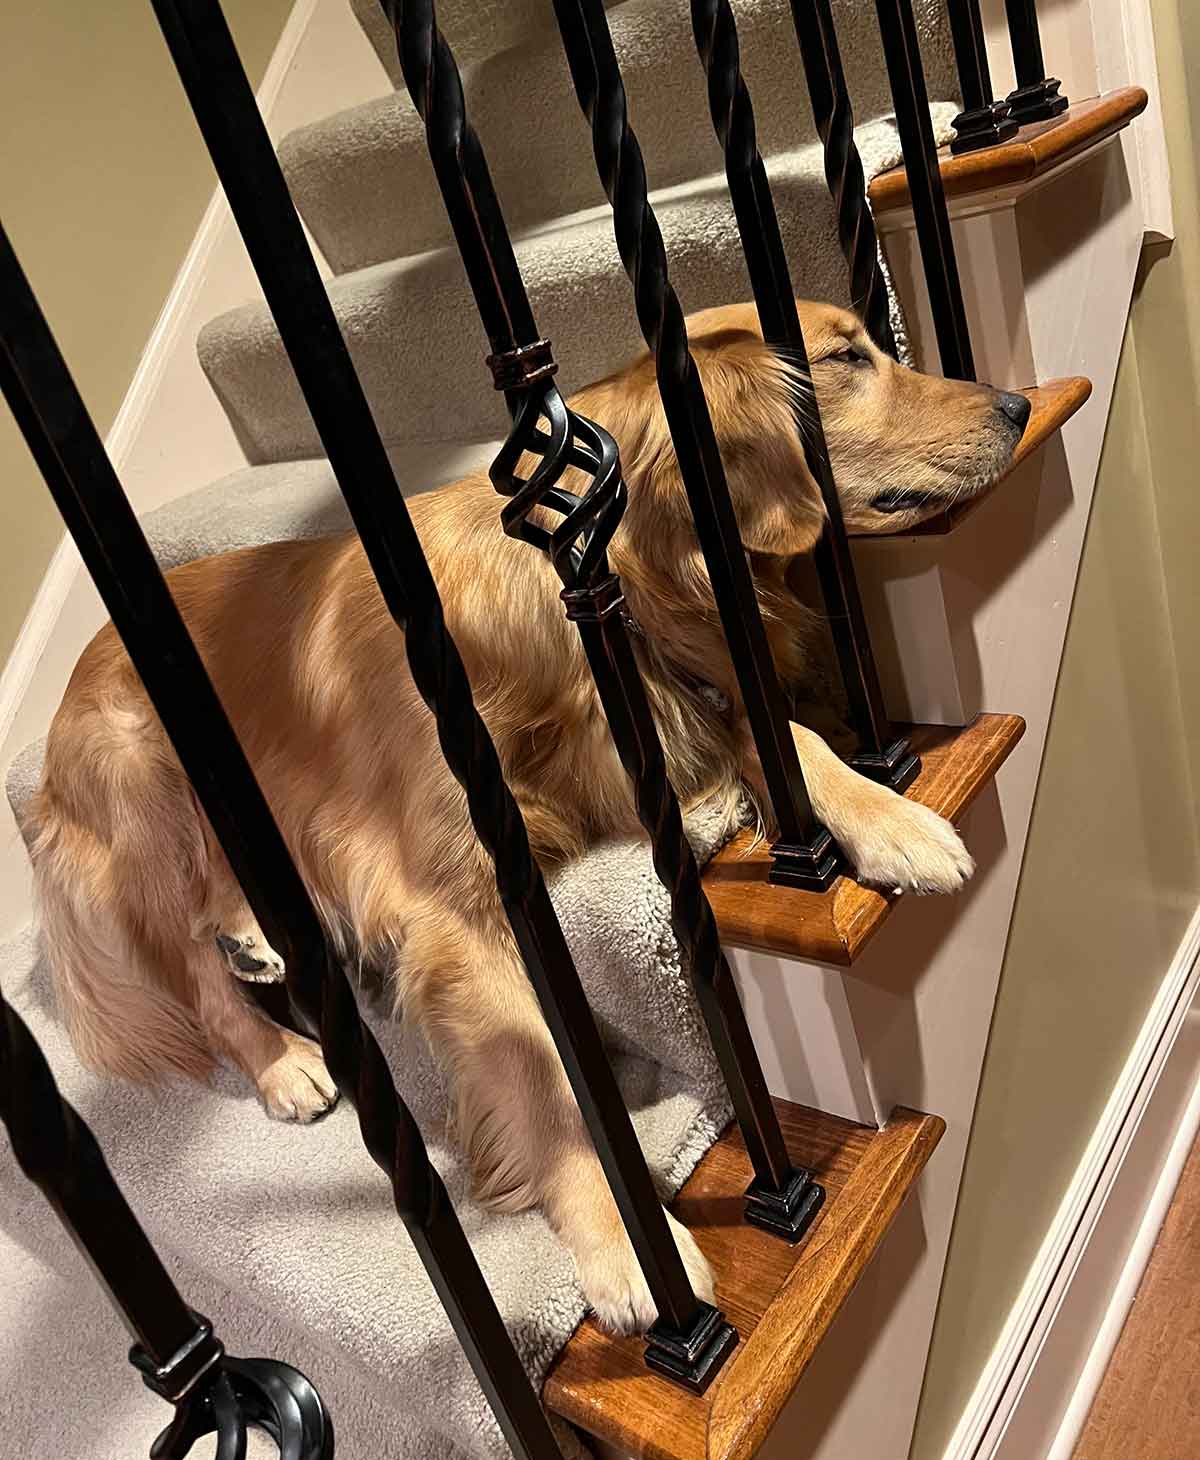 Dog sleeping on stairs.